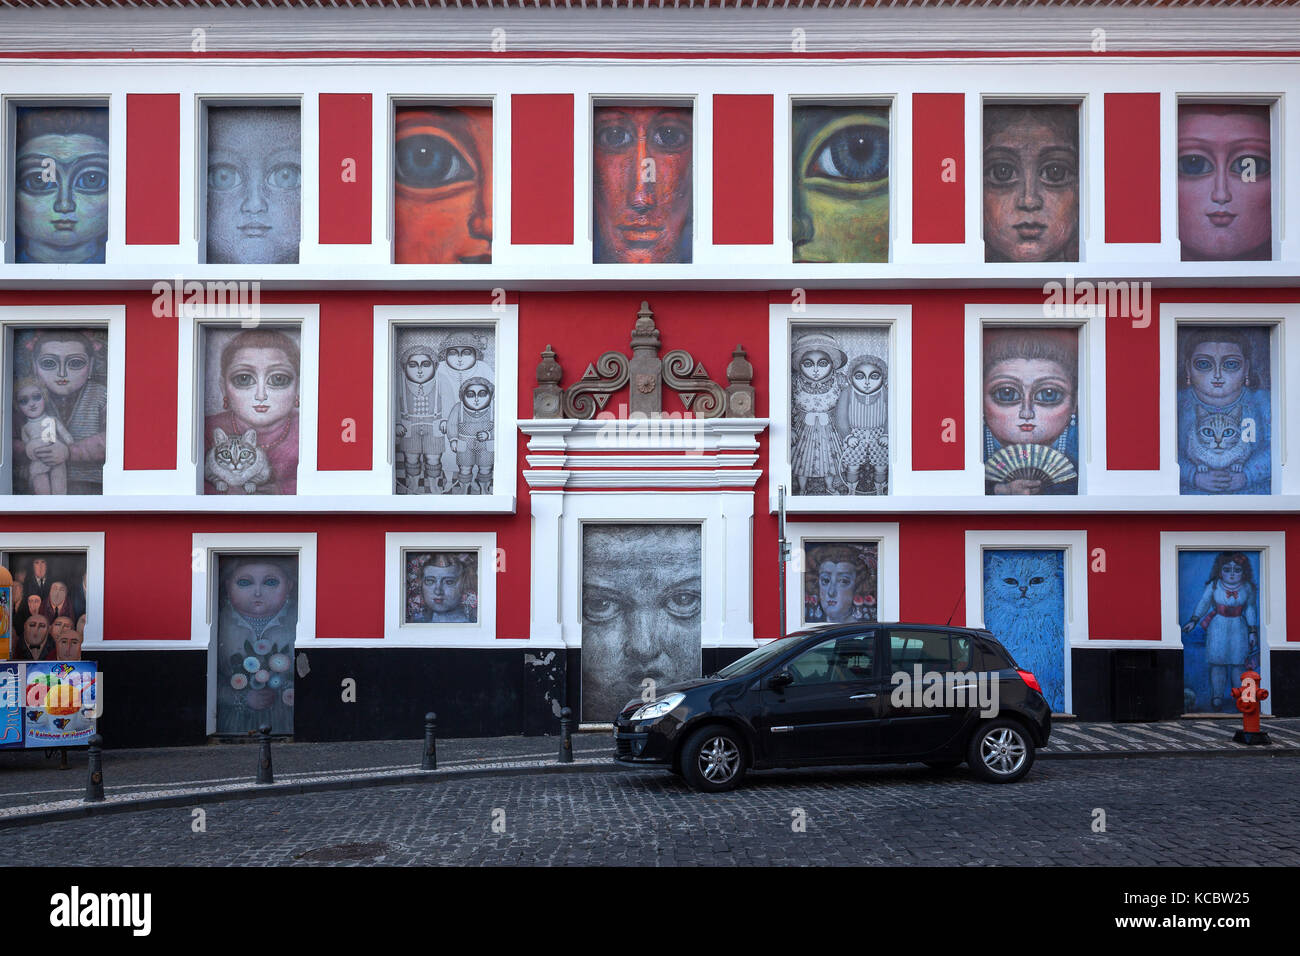 La parete della casa dipinta con immagini varie, città vecchia, angra do heroismo, sito patrimonio mondiale dell'UNESCO, l'isola di Terceira Foto Stock